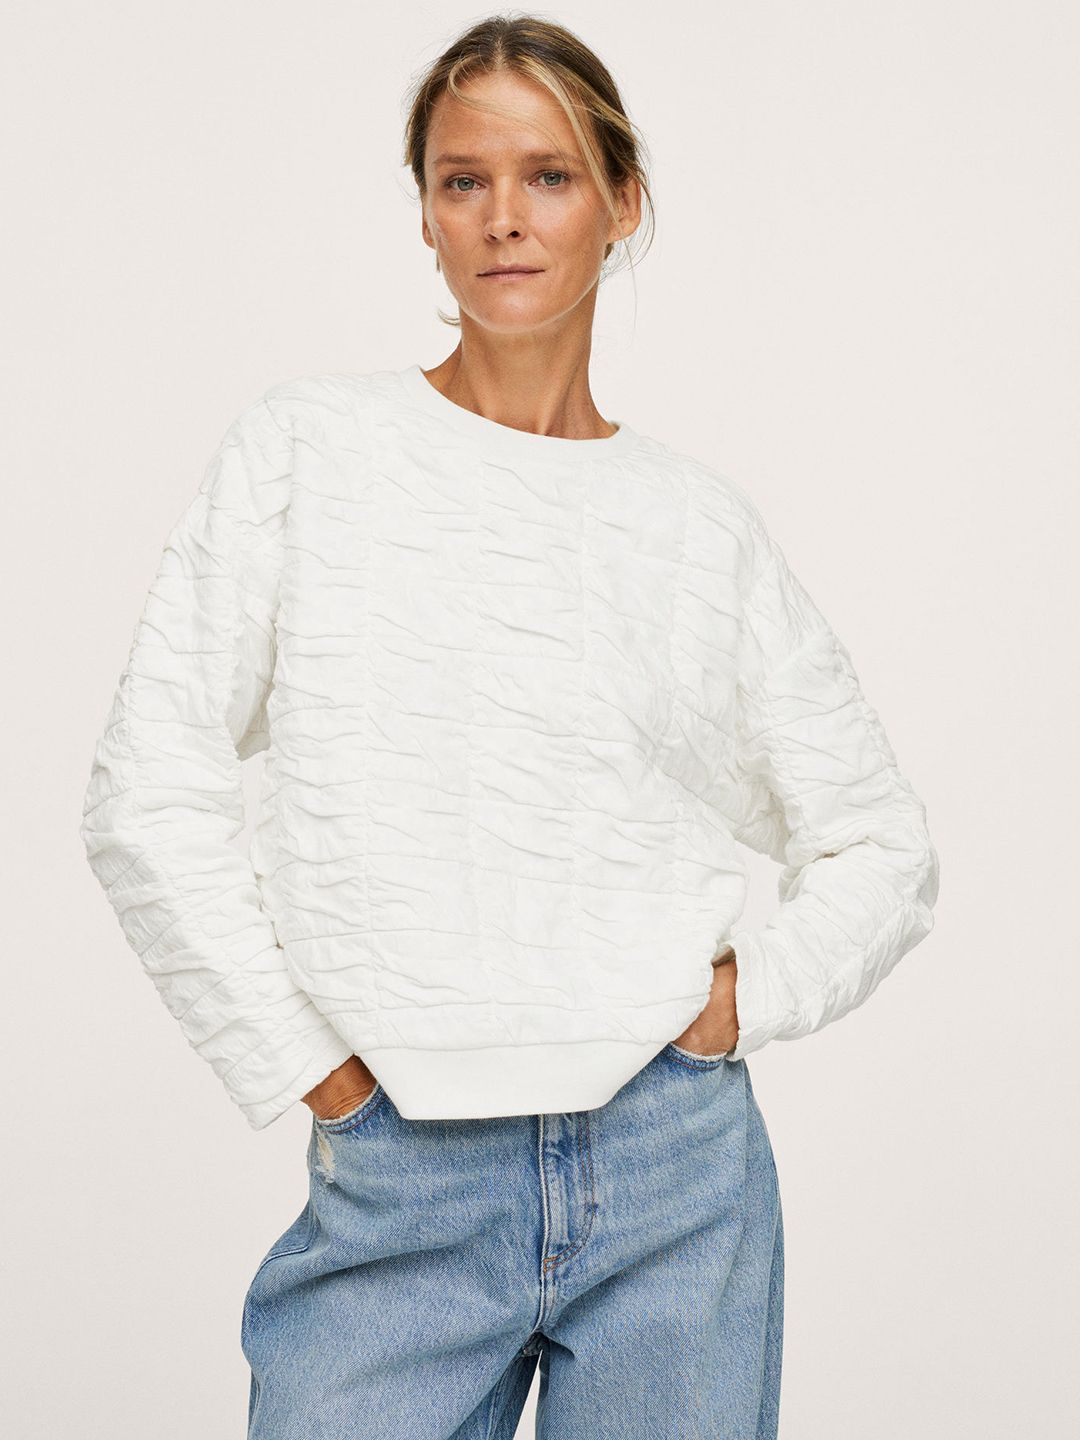 MANGO Women White Textured Sweatshirt Price in India